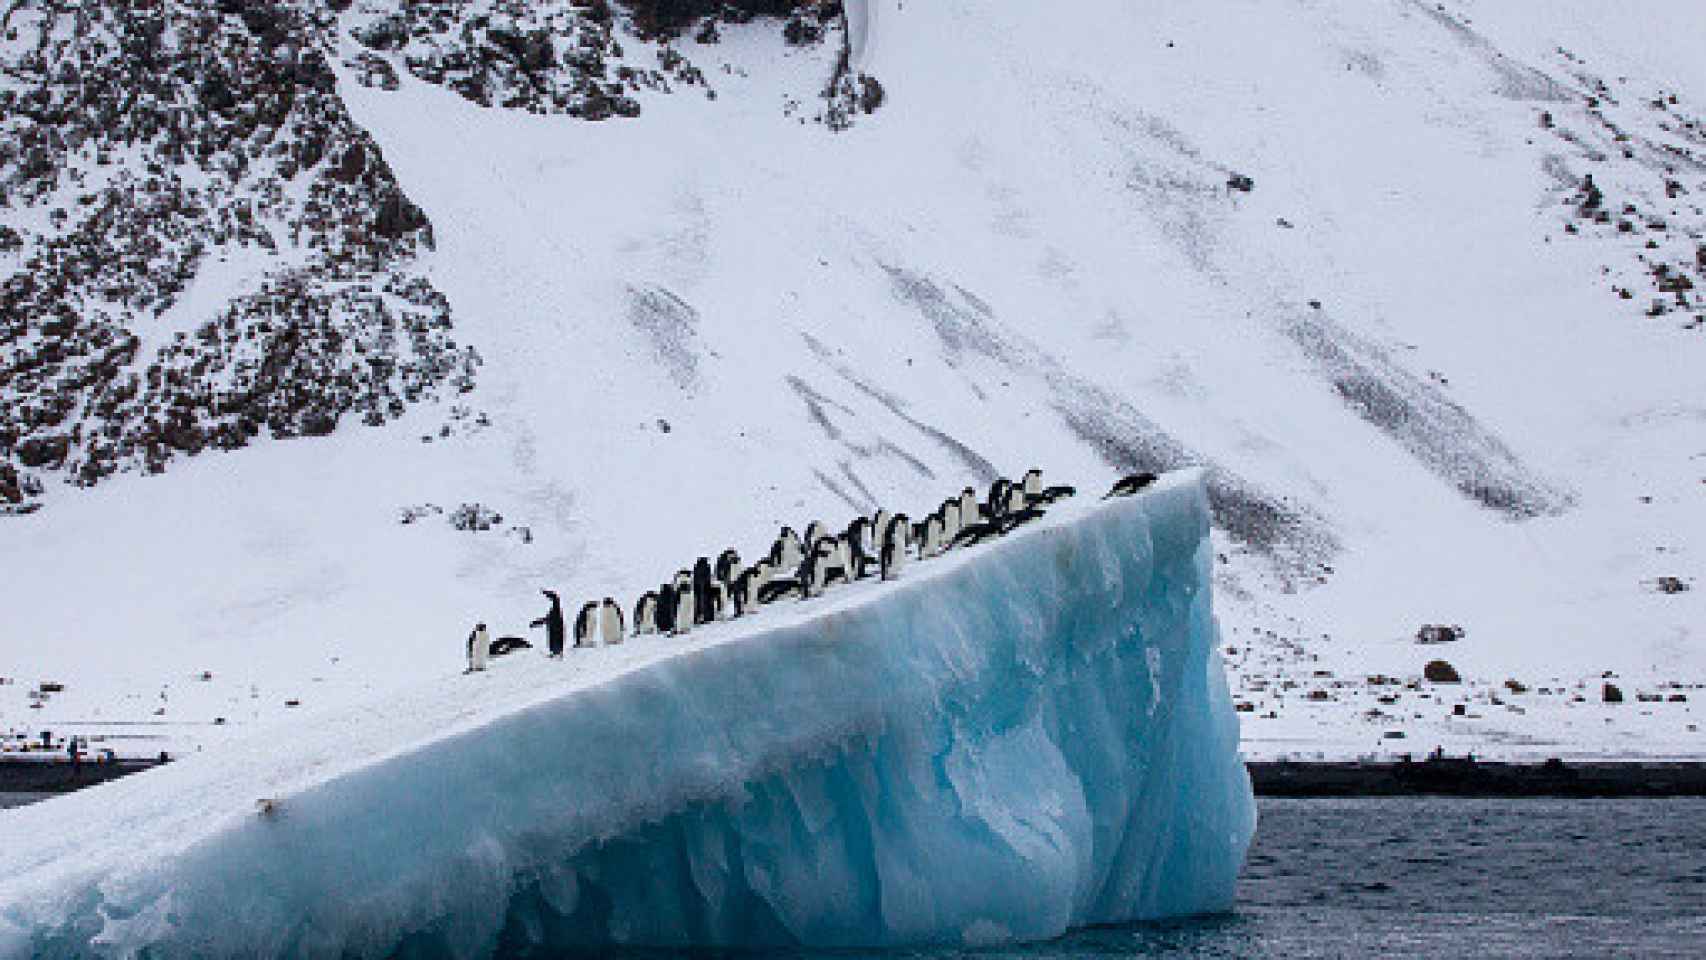 Pingüinos de Adelia (Pygoscelis adeliae) sobre un iceberg frente a Brown Bluff, Antártida.